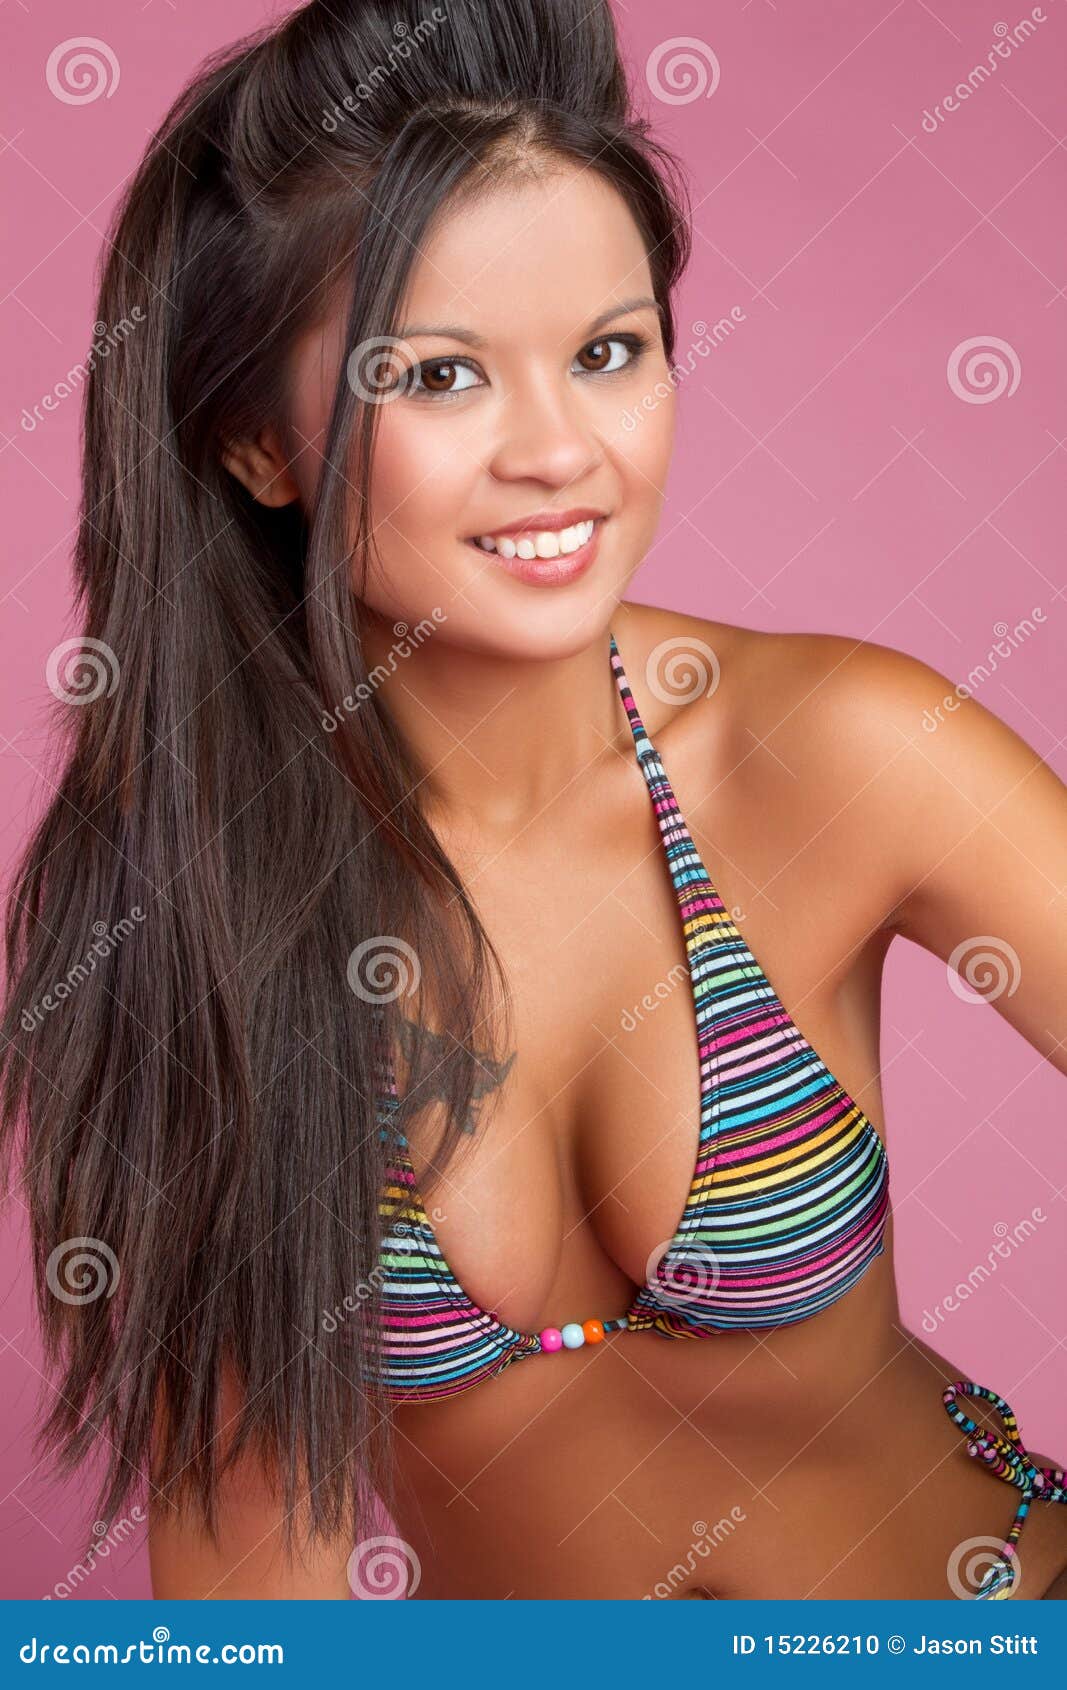 dev rijal add photo asian women in bikinis